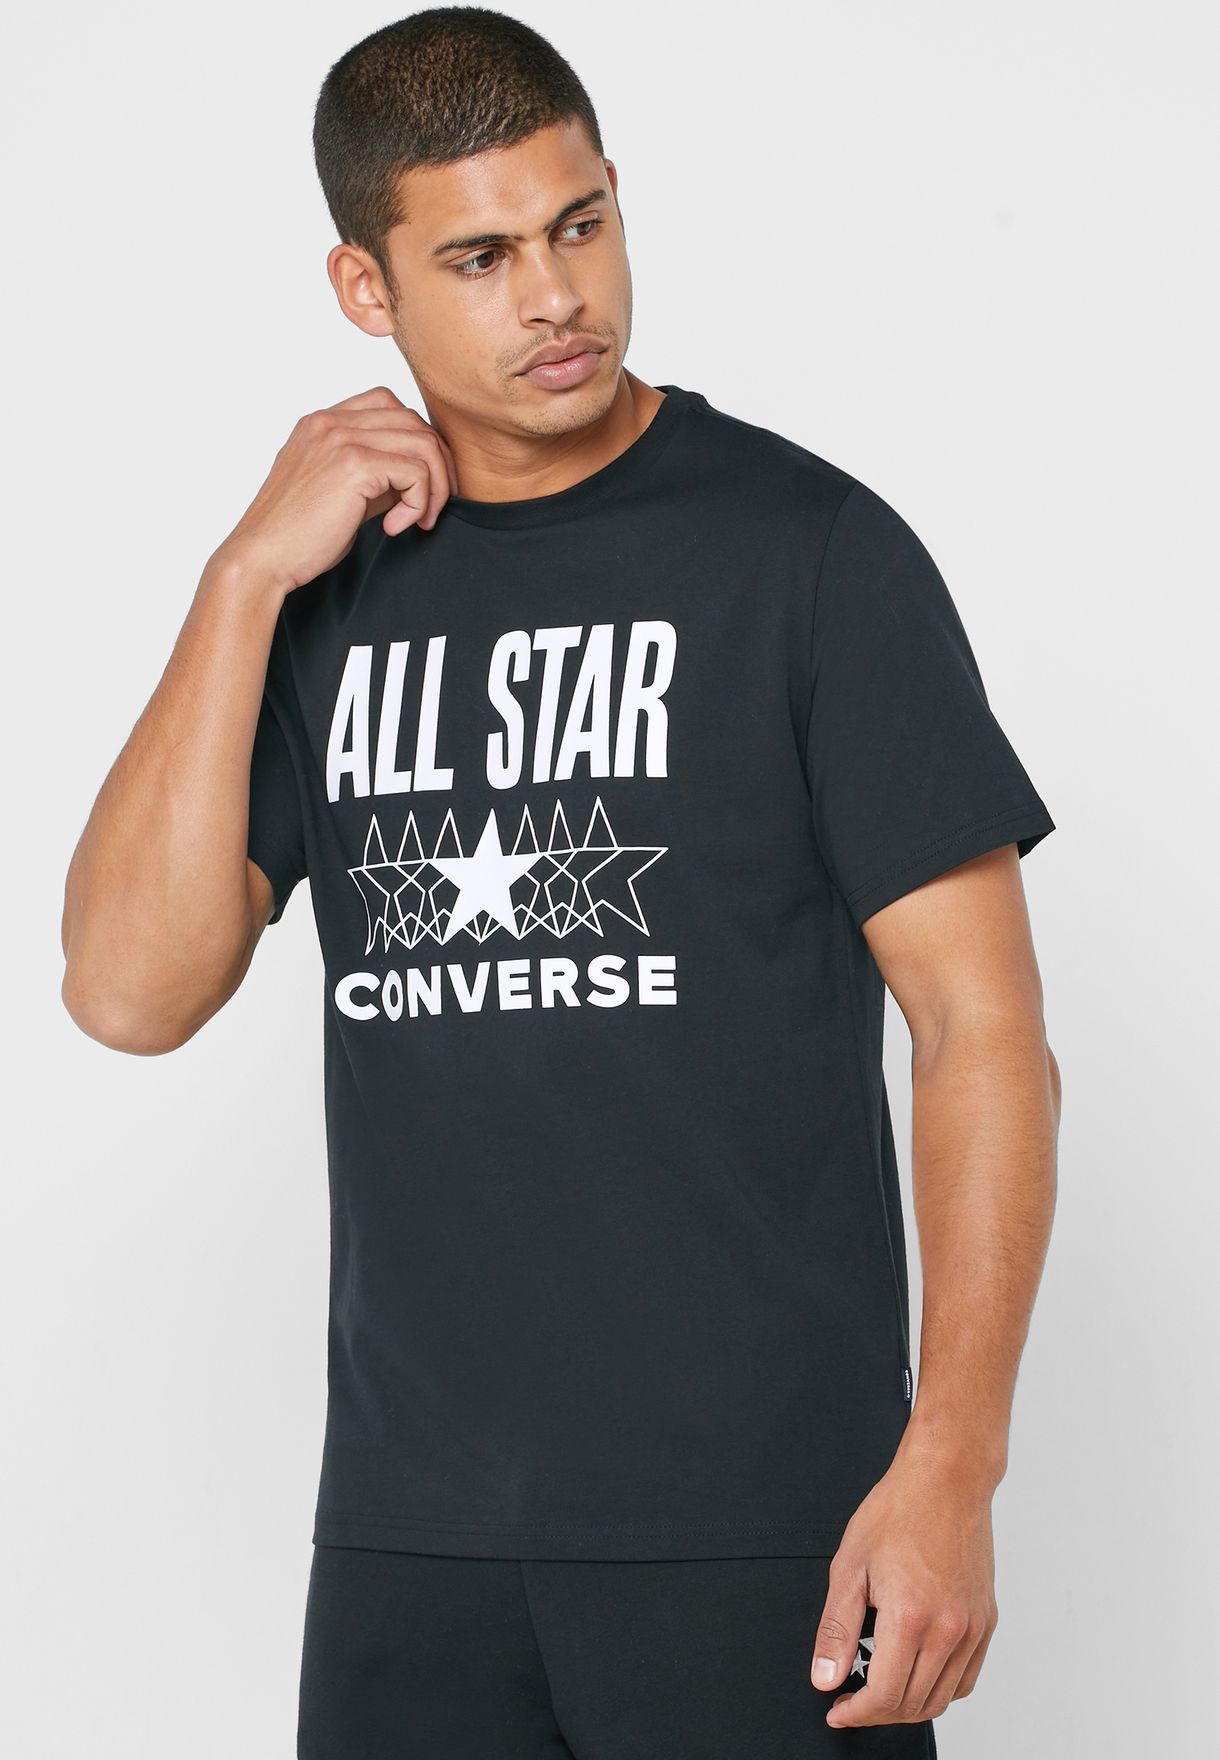 converse all star white t shirt